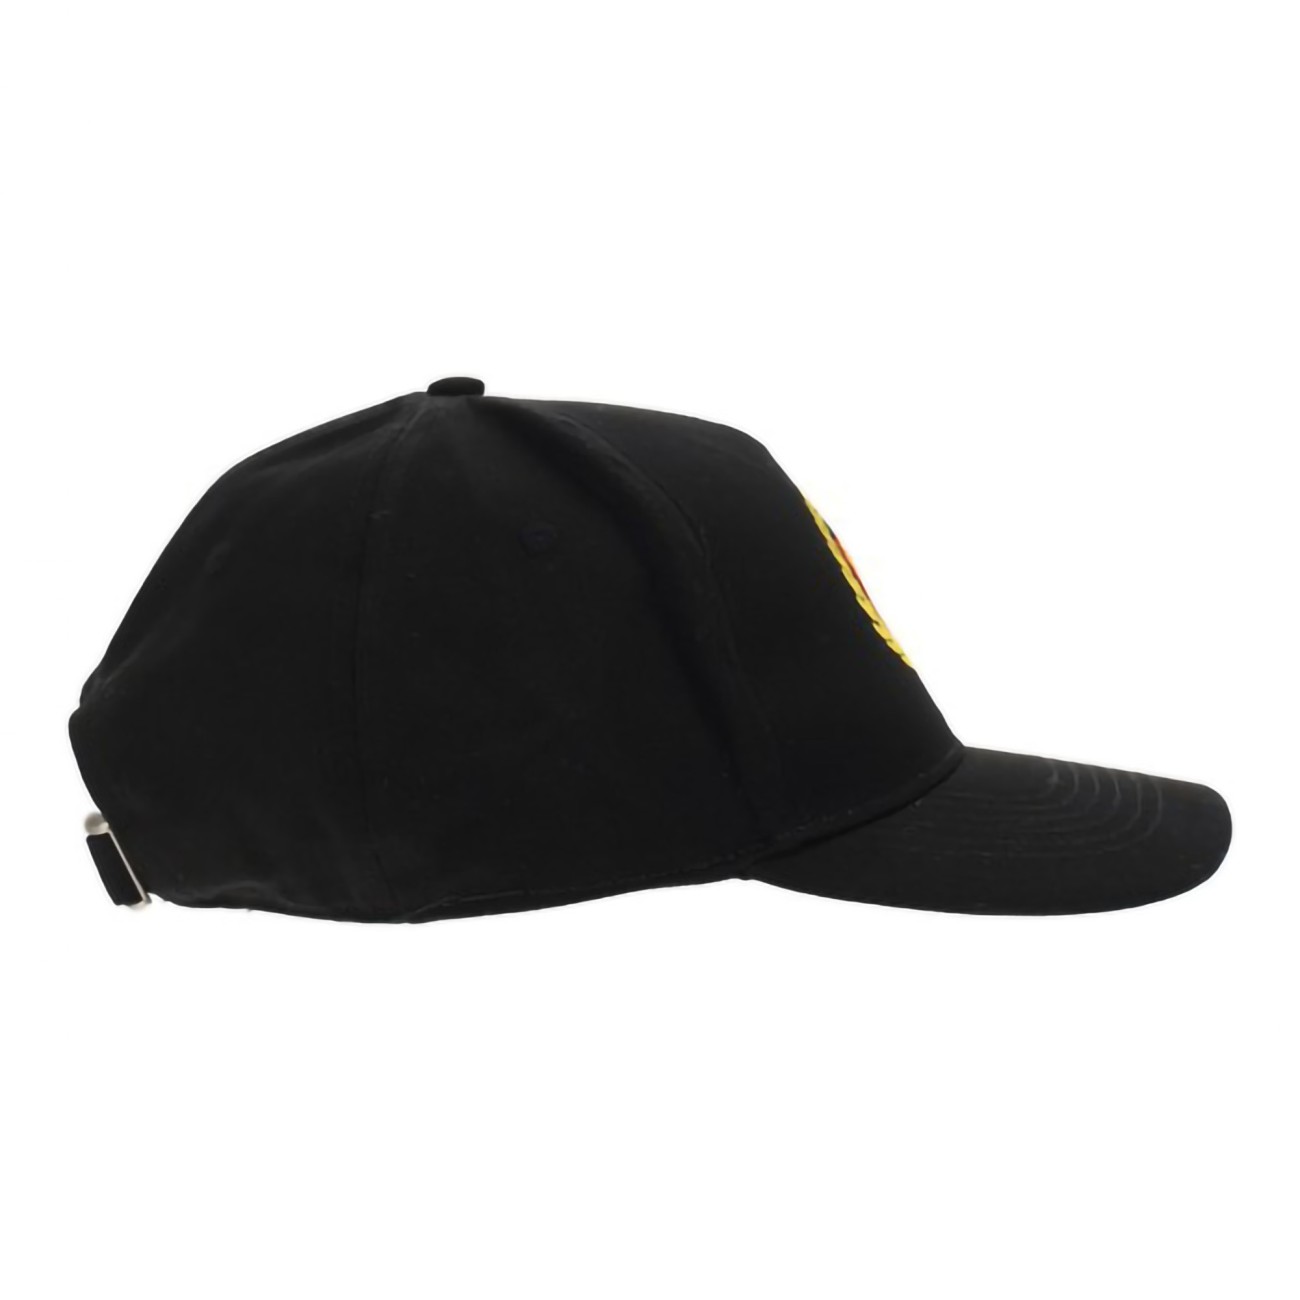 Bel Air black visor cap